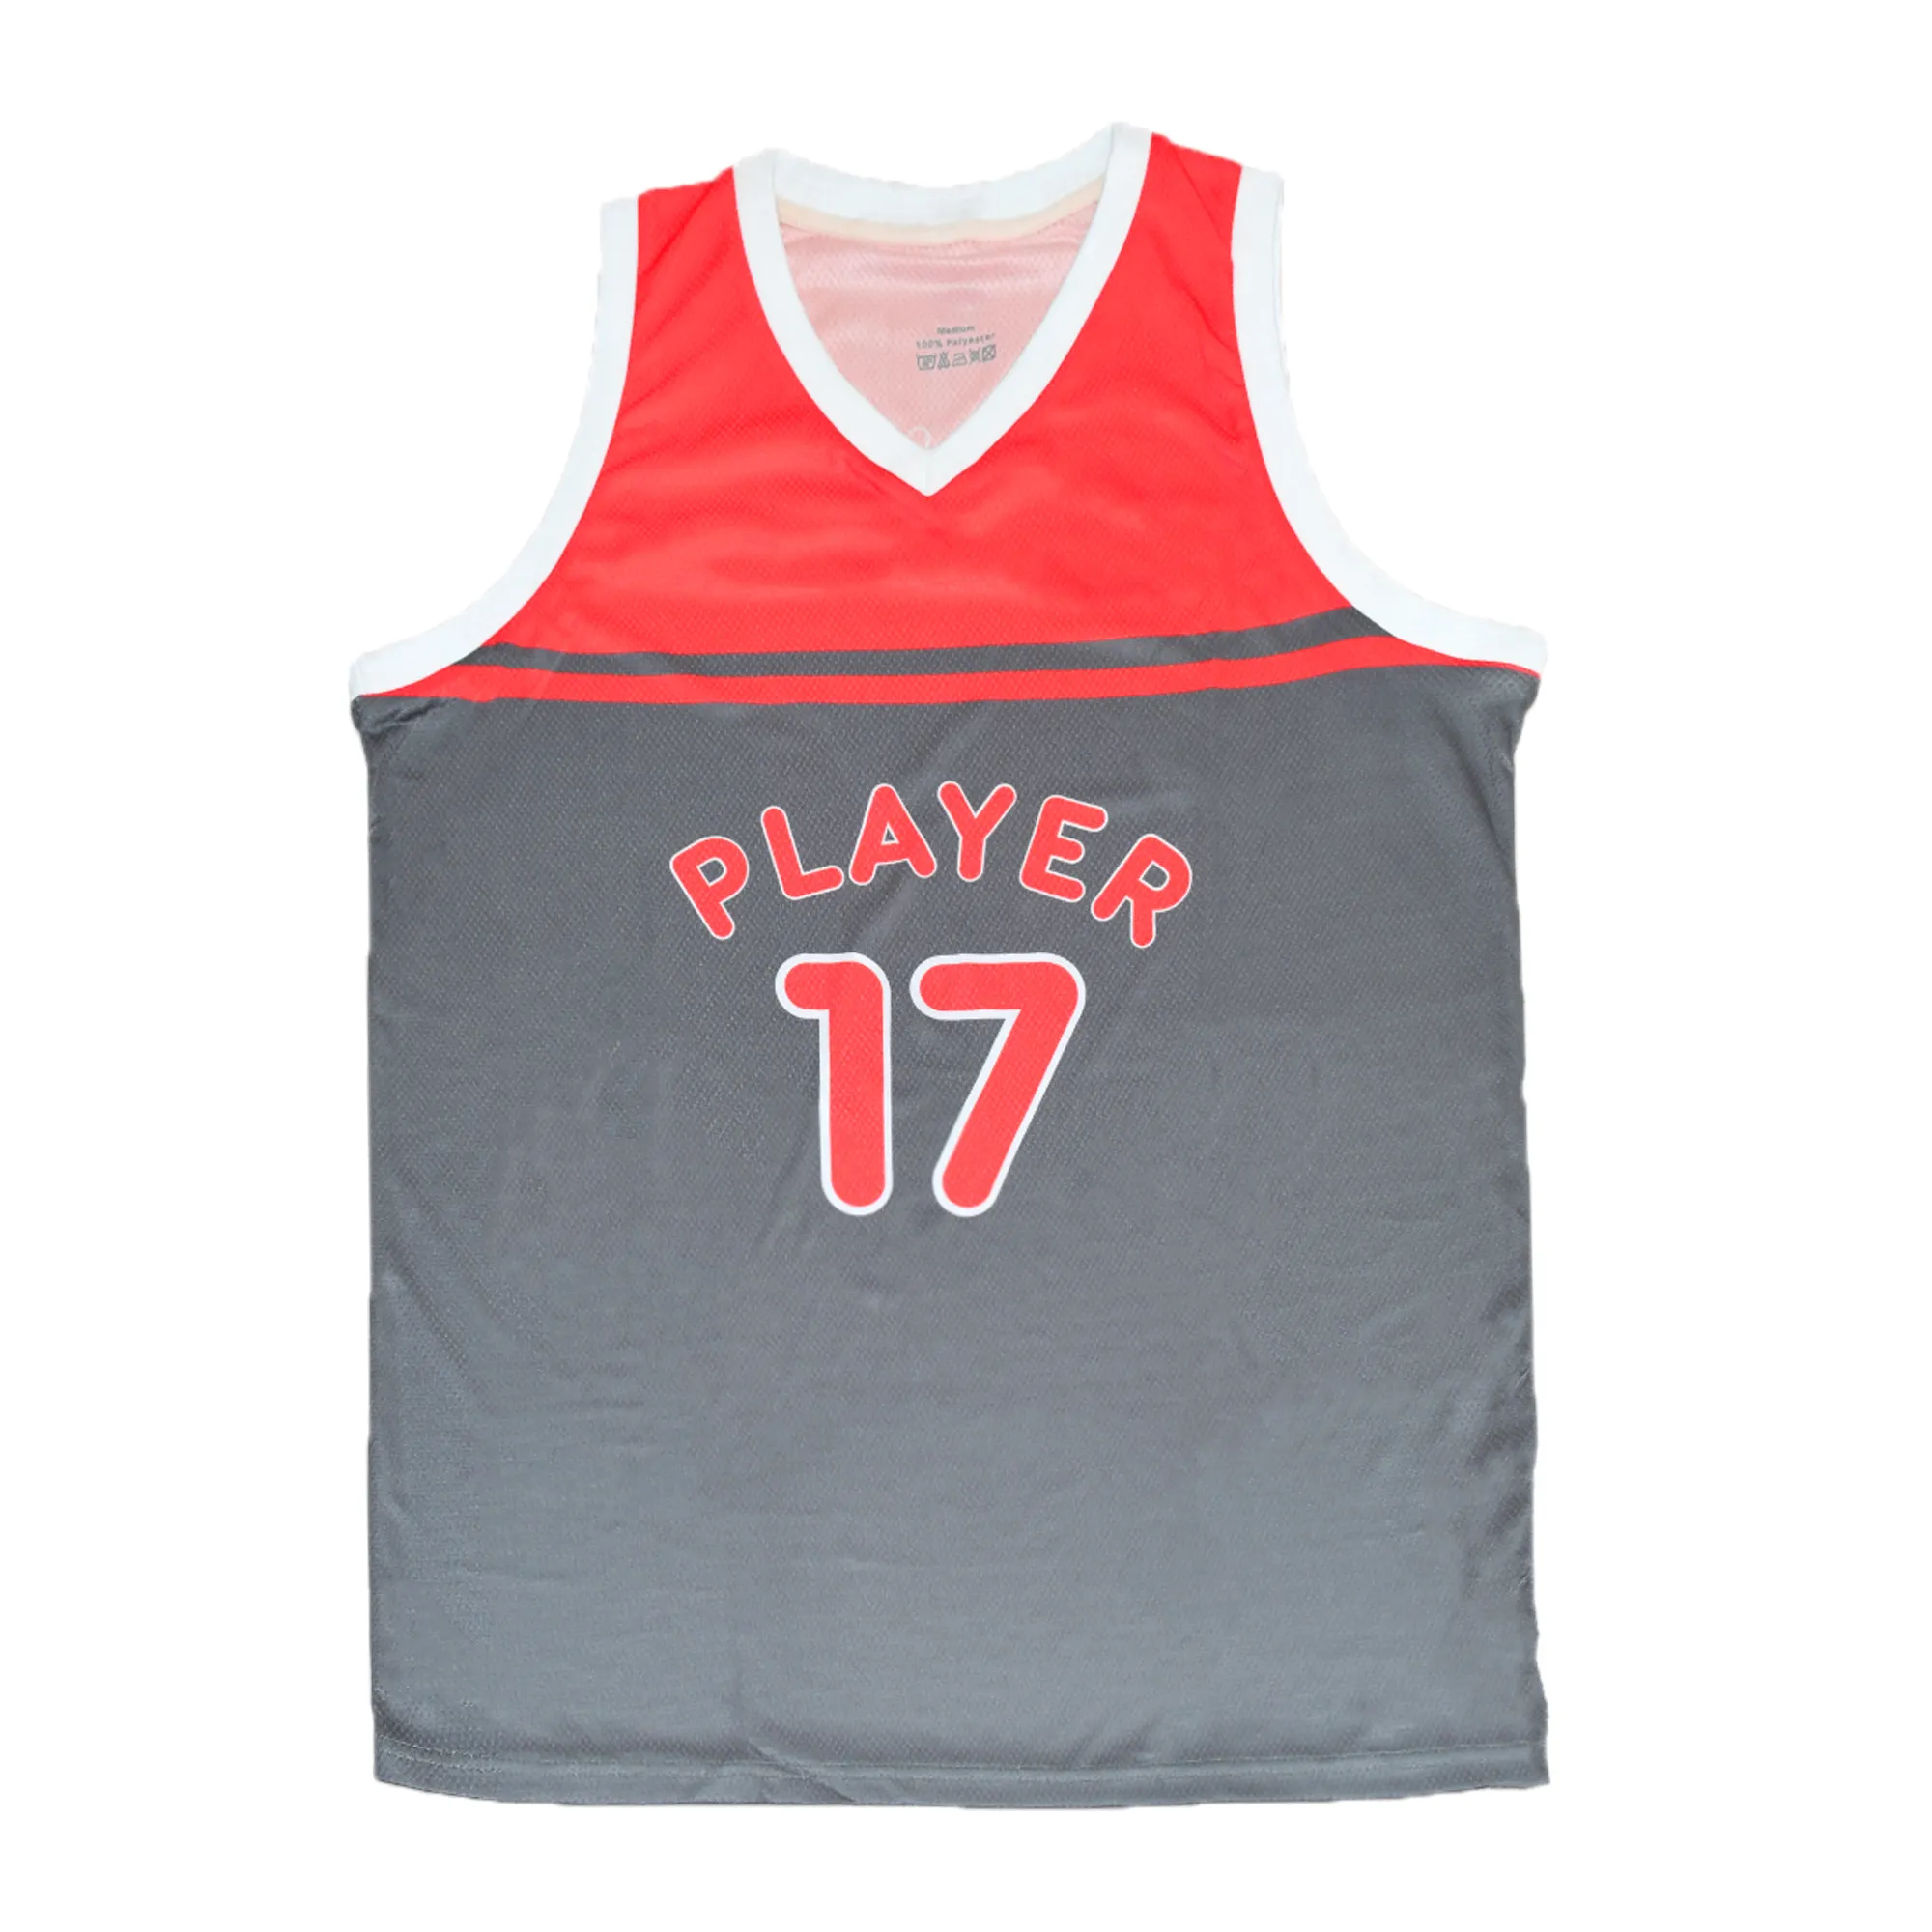 Rot und Grau komplett neues Design individuelle Basketball-Team-Uniform Vintage Liga-Weste schnell trocknendes Trikot mit individuellem Mannschaftsname